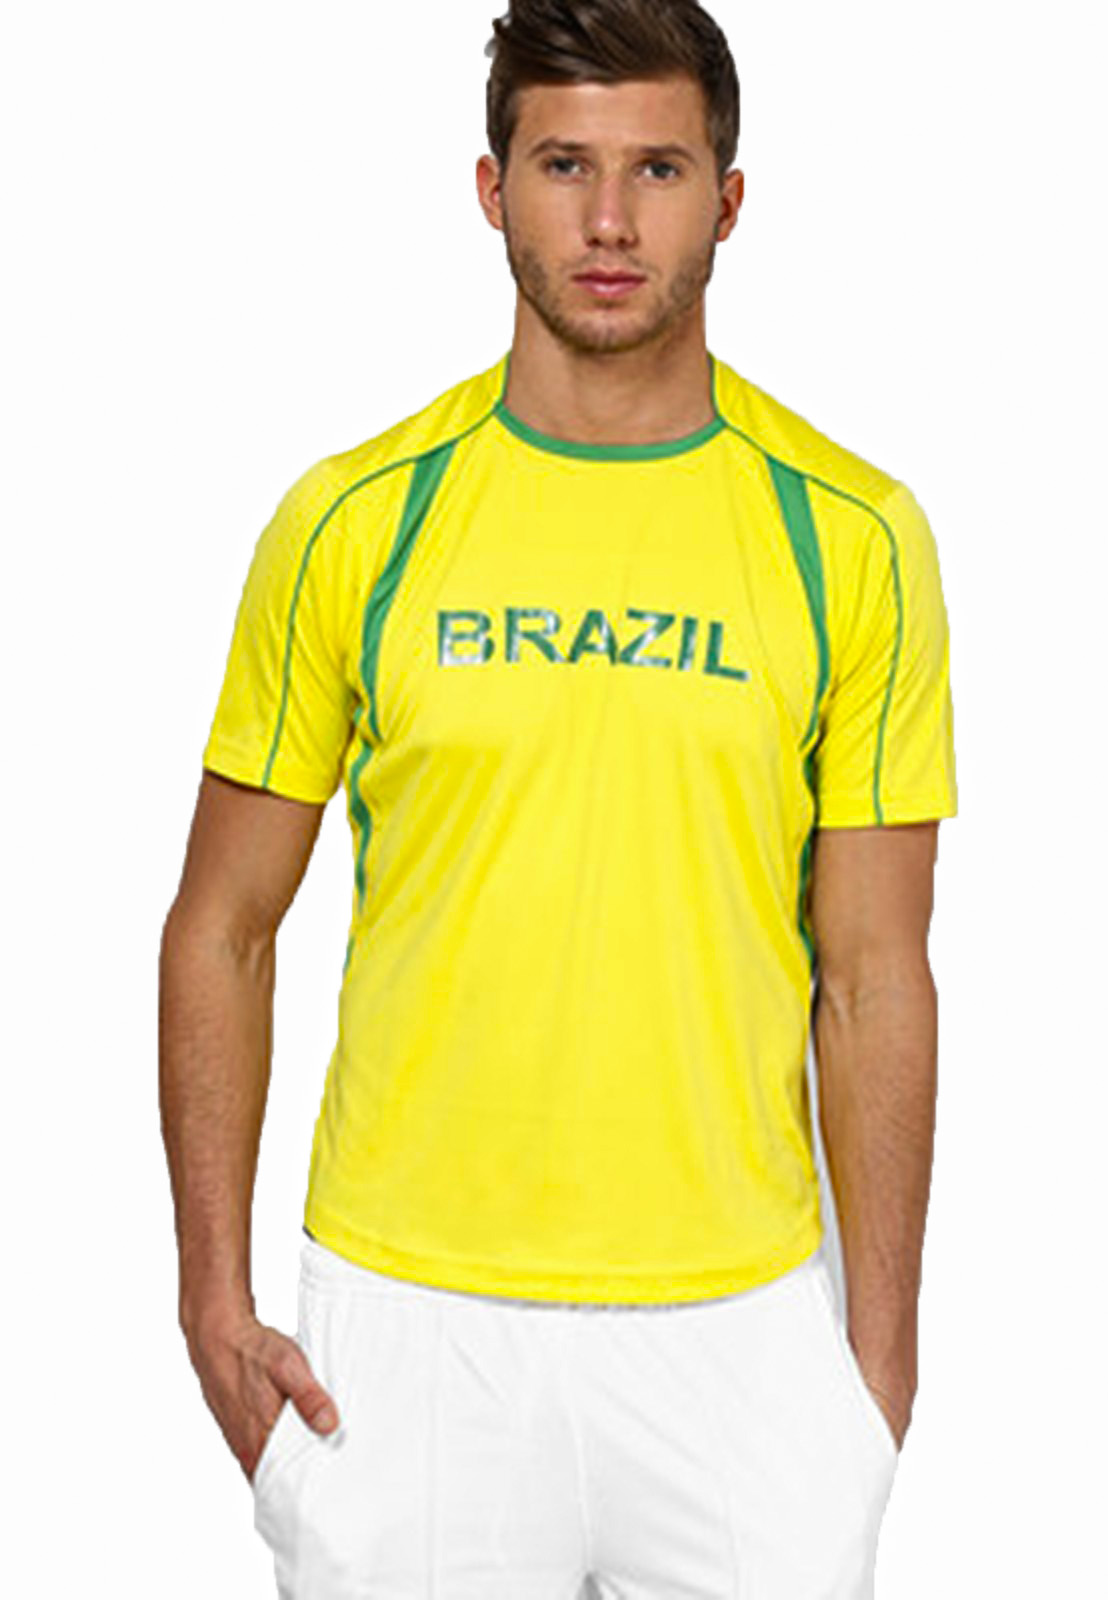 Buy T10 Sports Brazil Fan Jersey Online @ ₹699 from ShopClues